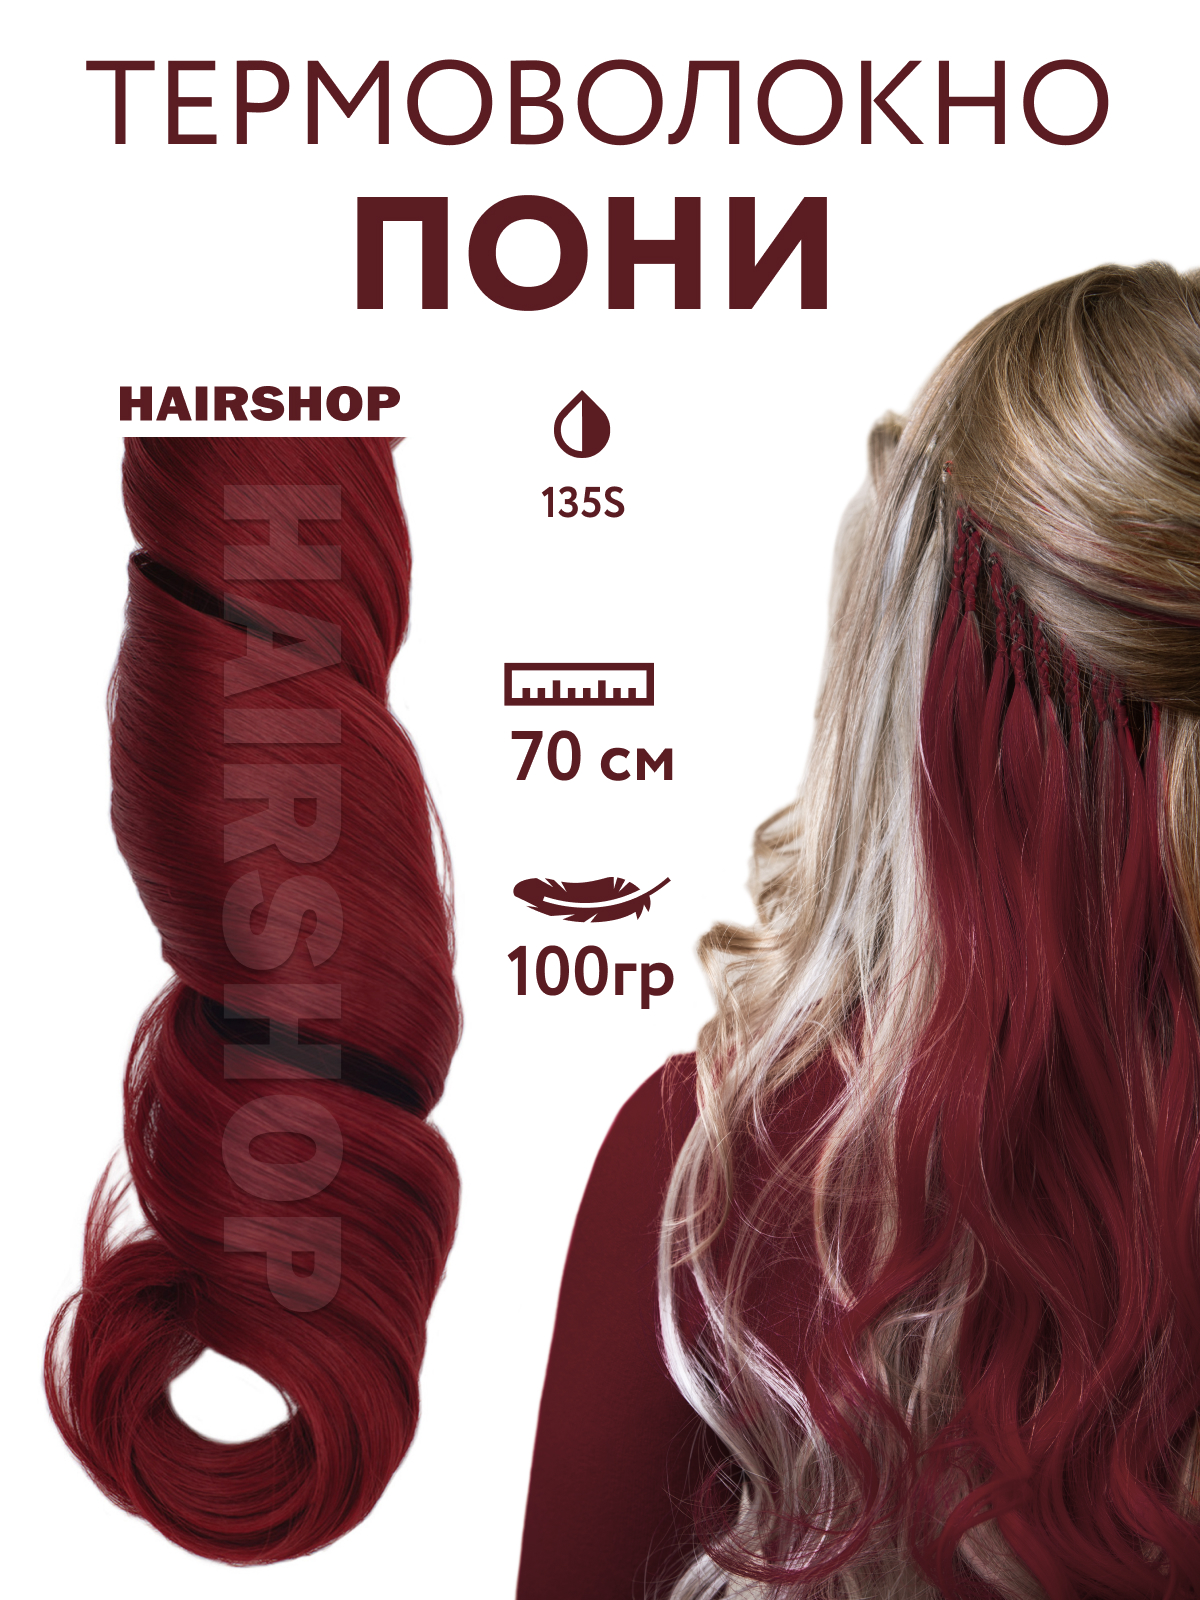 Канекалон Hairshop Пони HairUp для точечного афронаращивания 135-1 Красно-коричневый 1,4м канекалон hairshop пони hairup для точечного афронаращивания 135s красно рыжий 1 4м